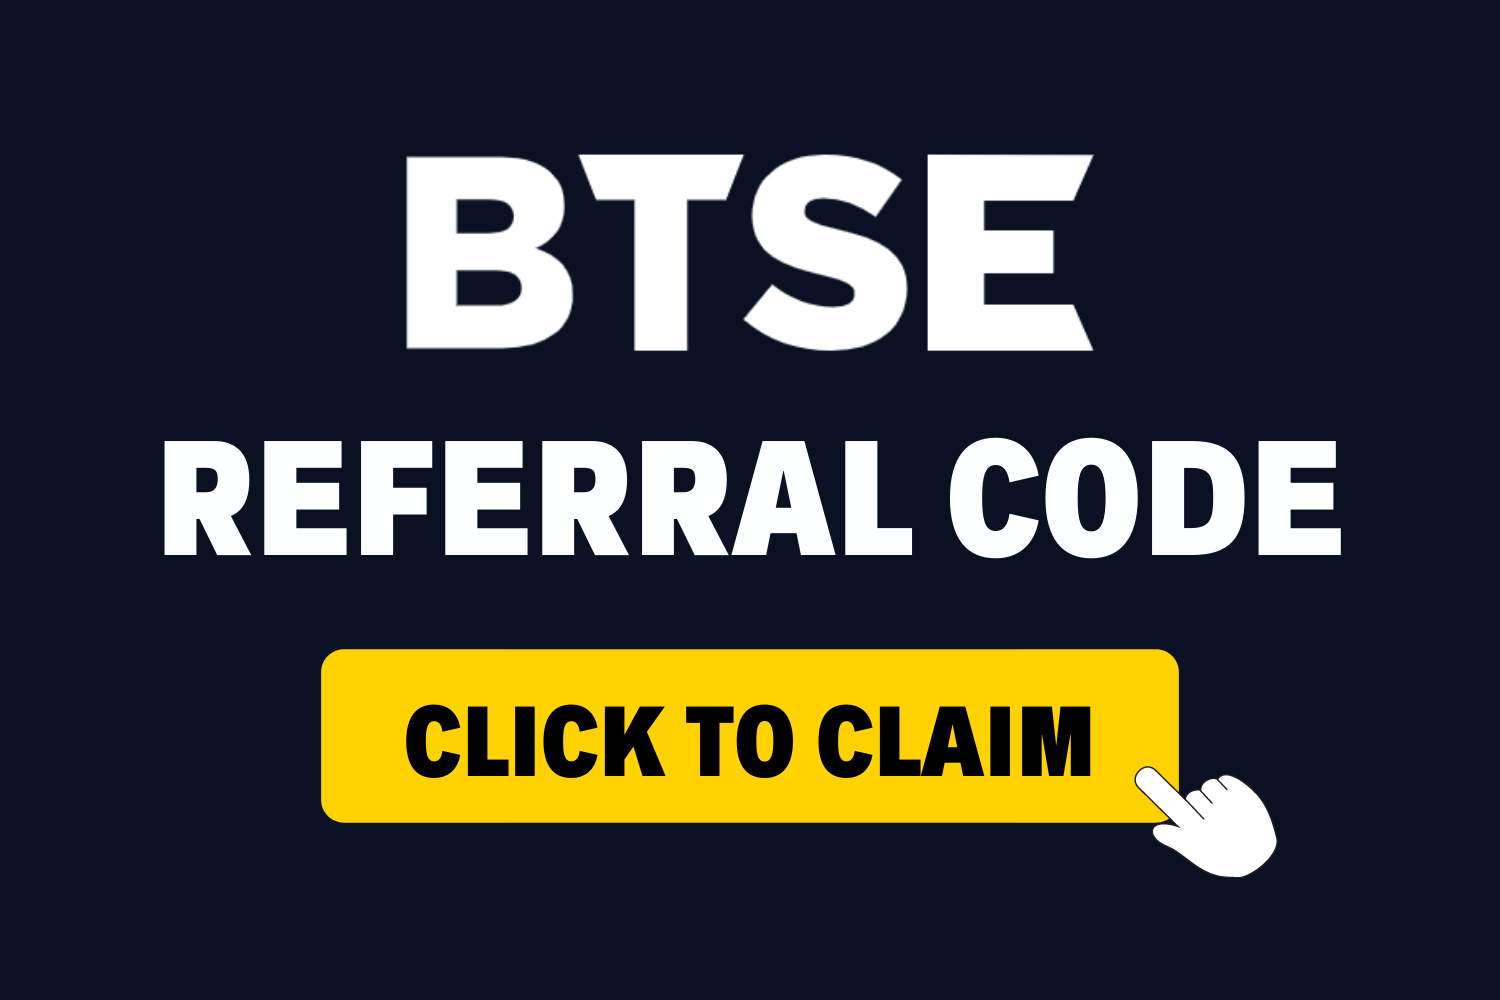 btse-referral-code-homepage.png